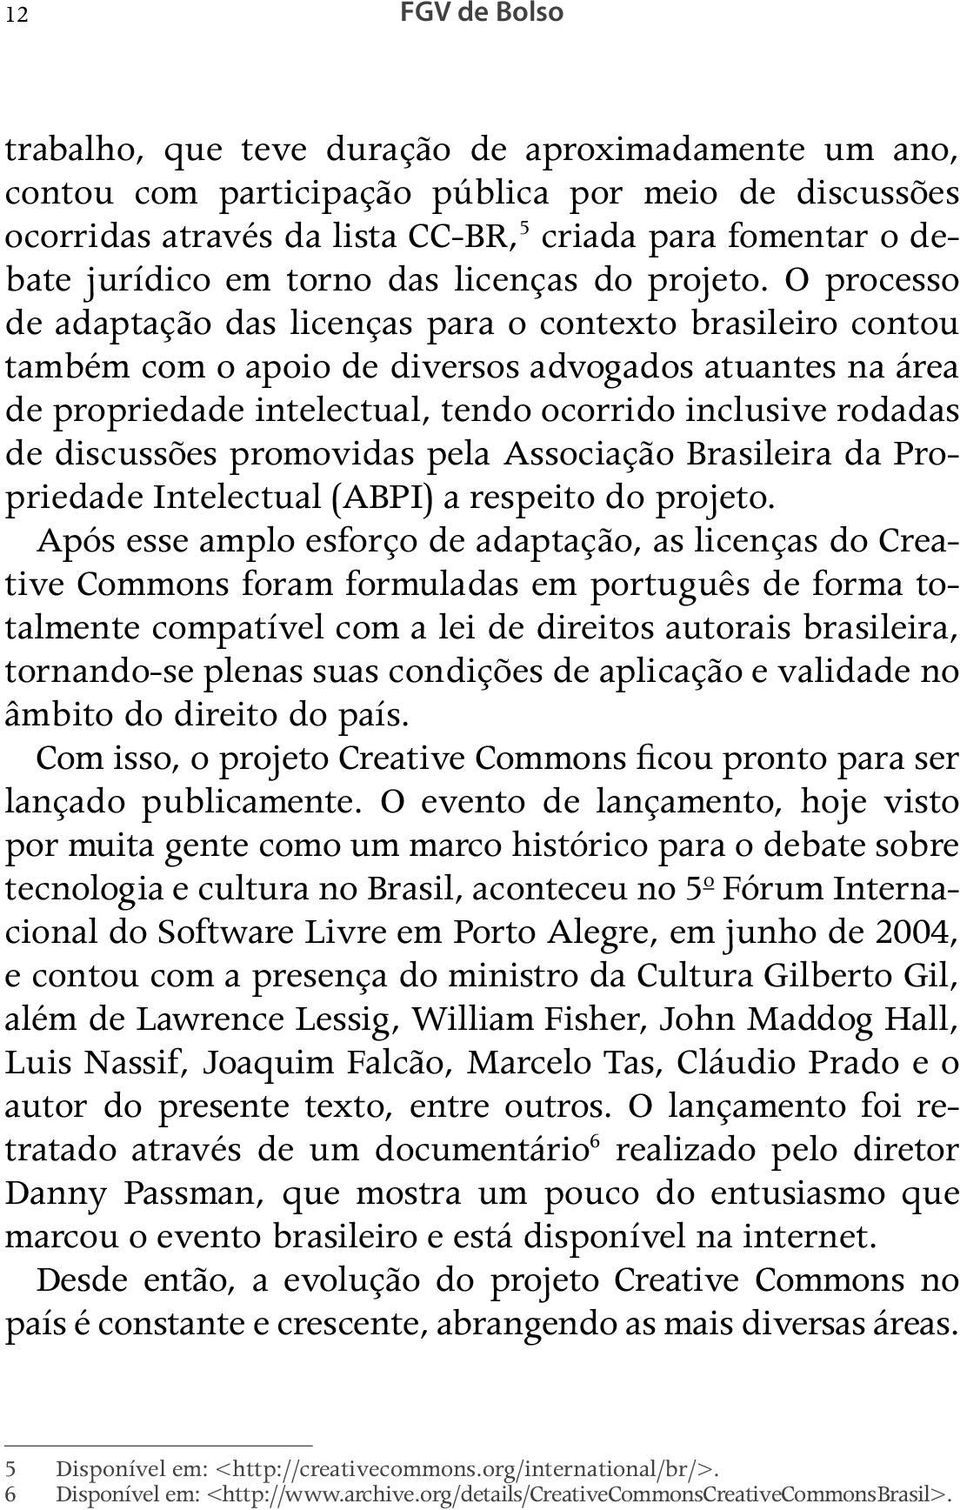 O processo de adaptação das licenças para o contexto brasileiro contou também com o apoio de diversos advogados atuantes na área de propriedade intelectual, tendo ocorrido inclusive rodadas de